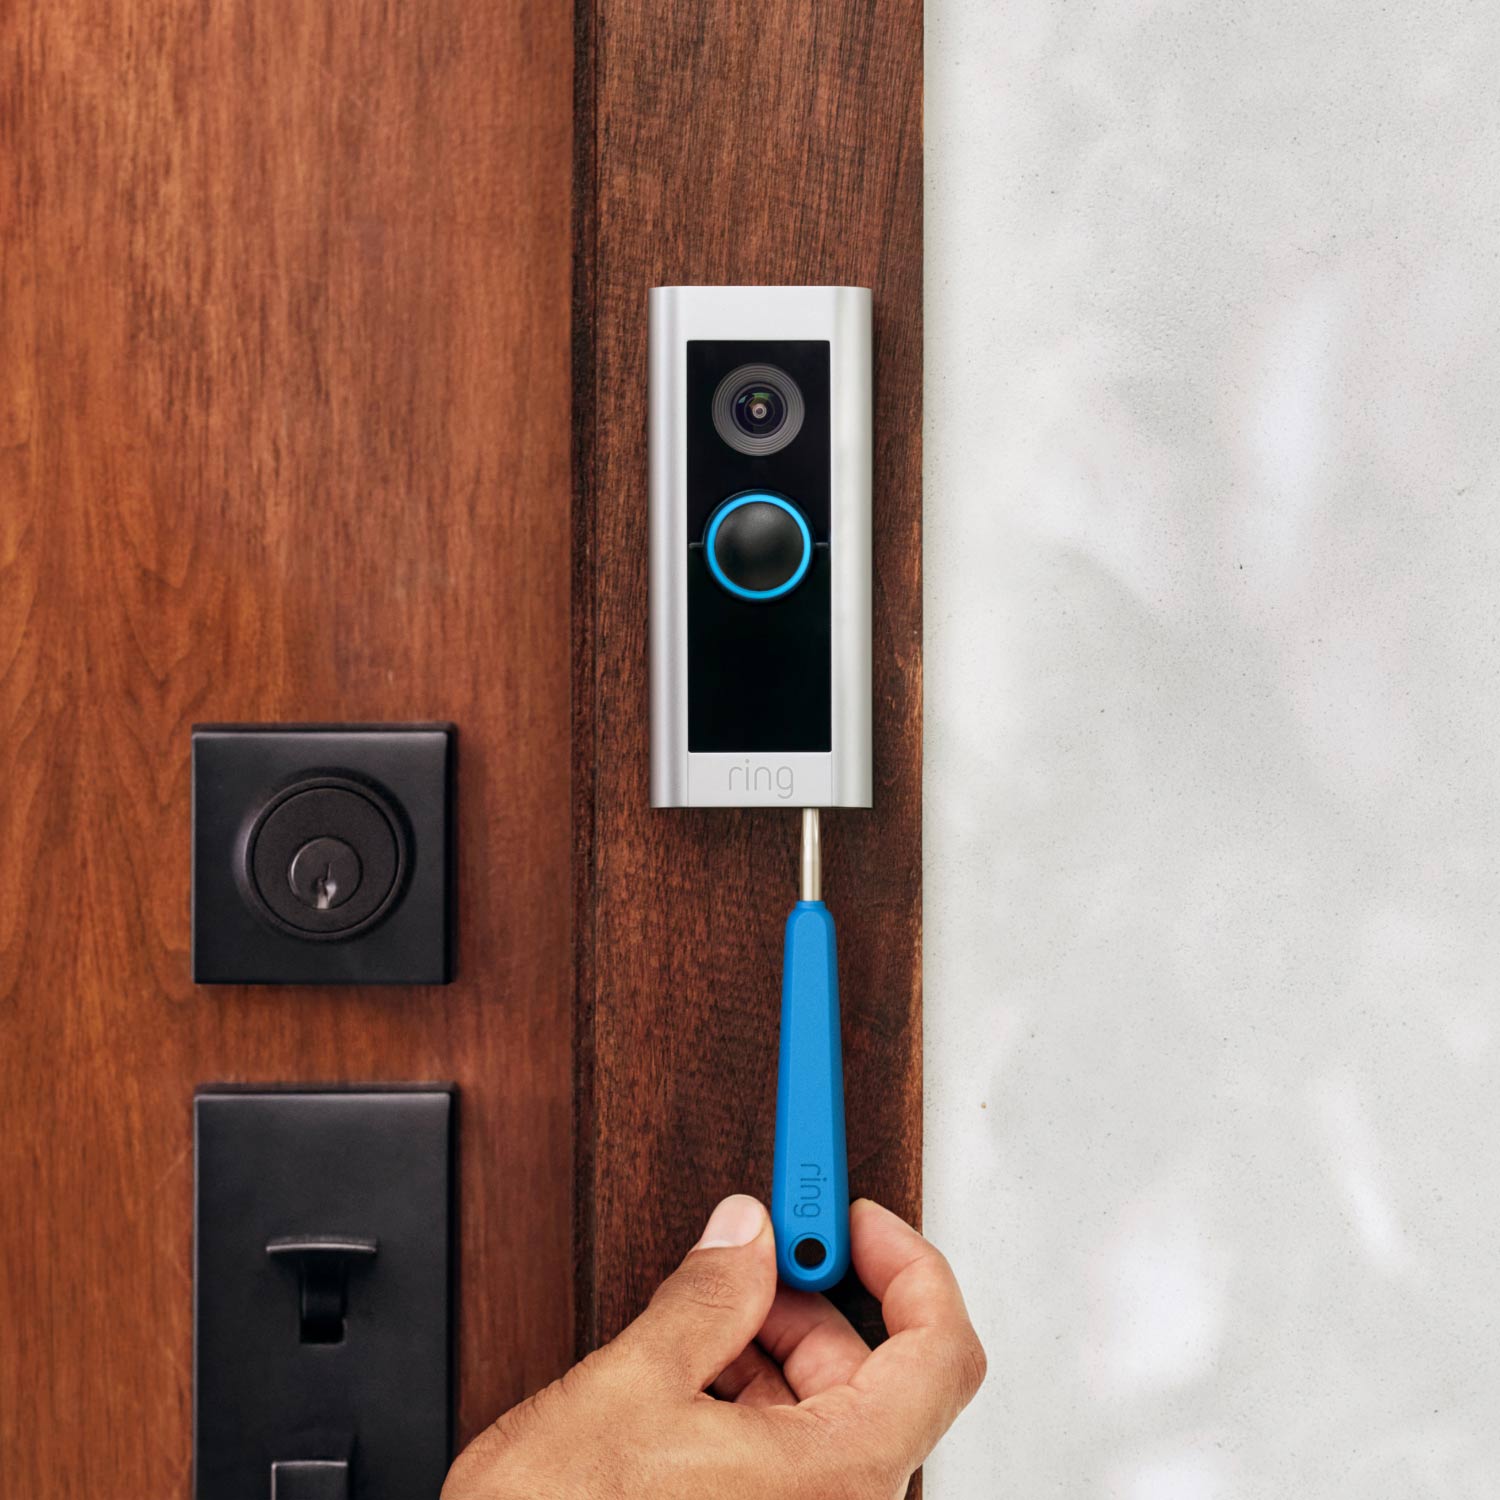 Wired Doorbell Pro (Video Doorbell Pro 2) (Certified Refurbished) - Close-up of hand installing Wired Doorbell Pro in satin nickel finish next to front door.